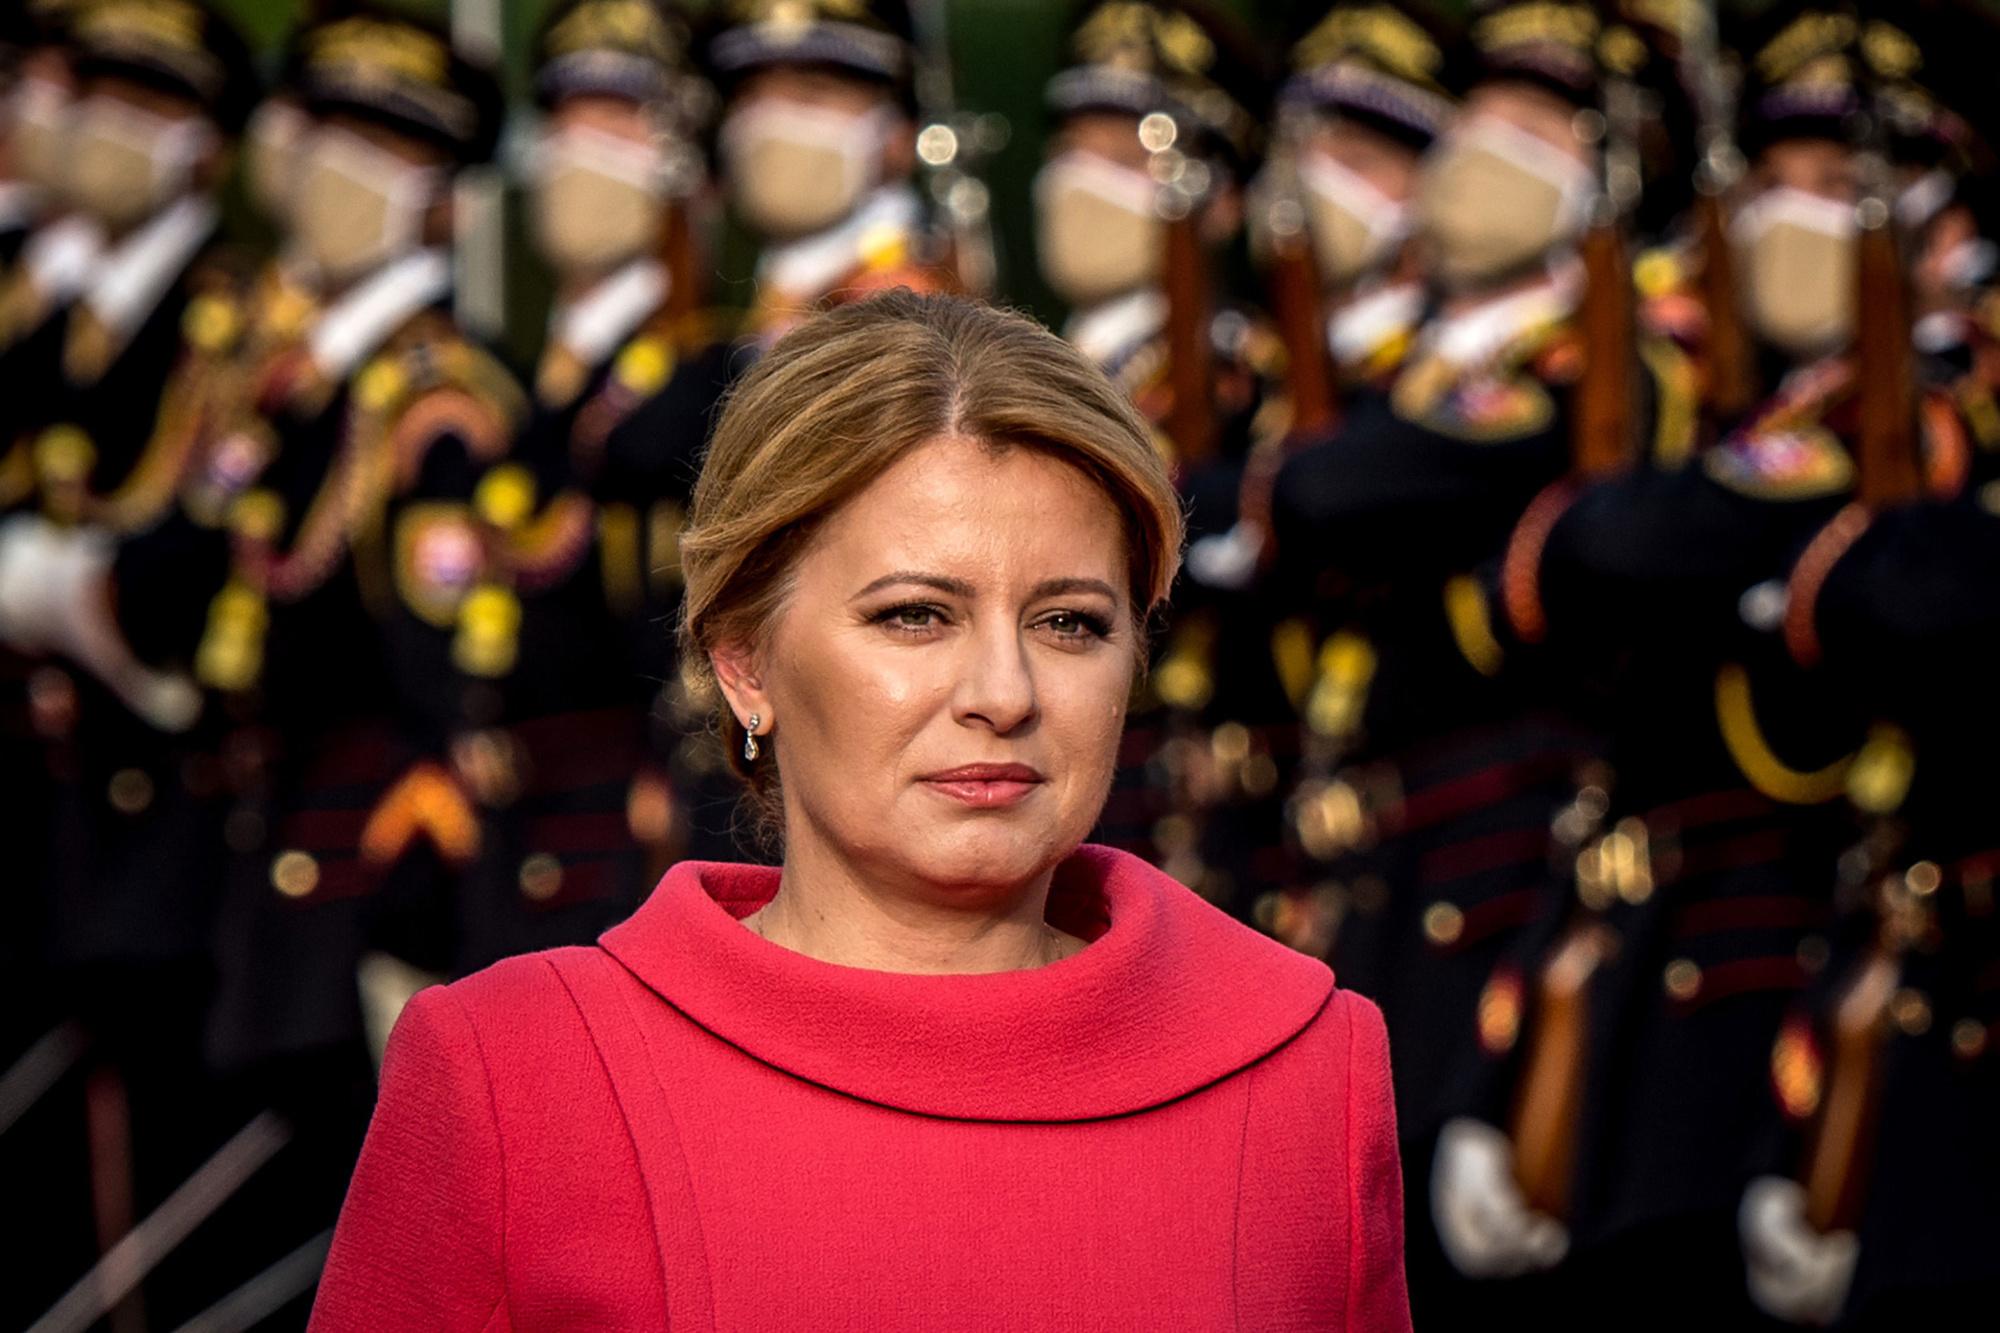 Zuzana Caputová tijdens een ceremonie aan haar presidentieel paleis in september 2020 